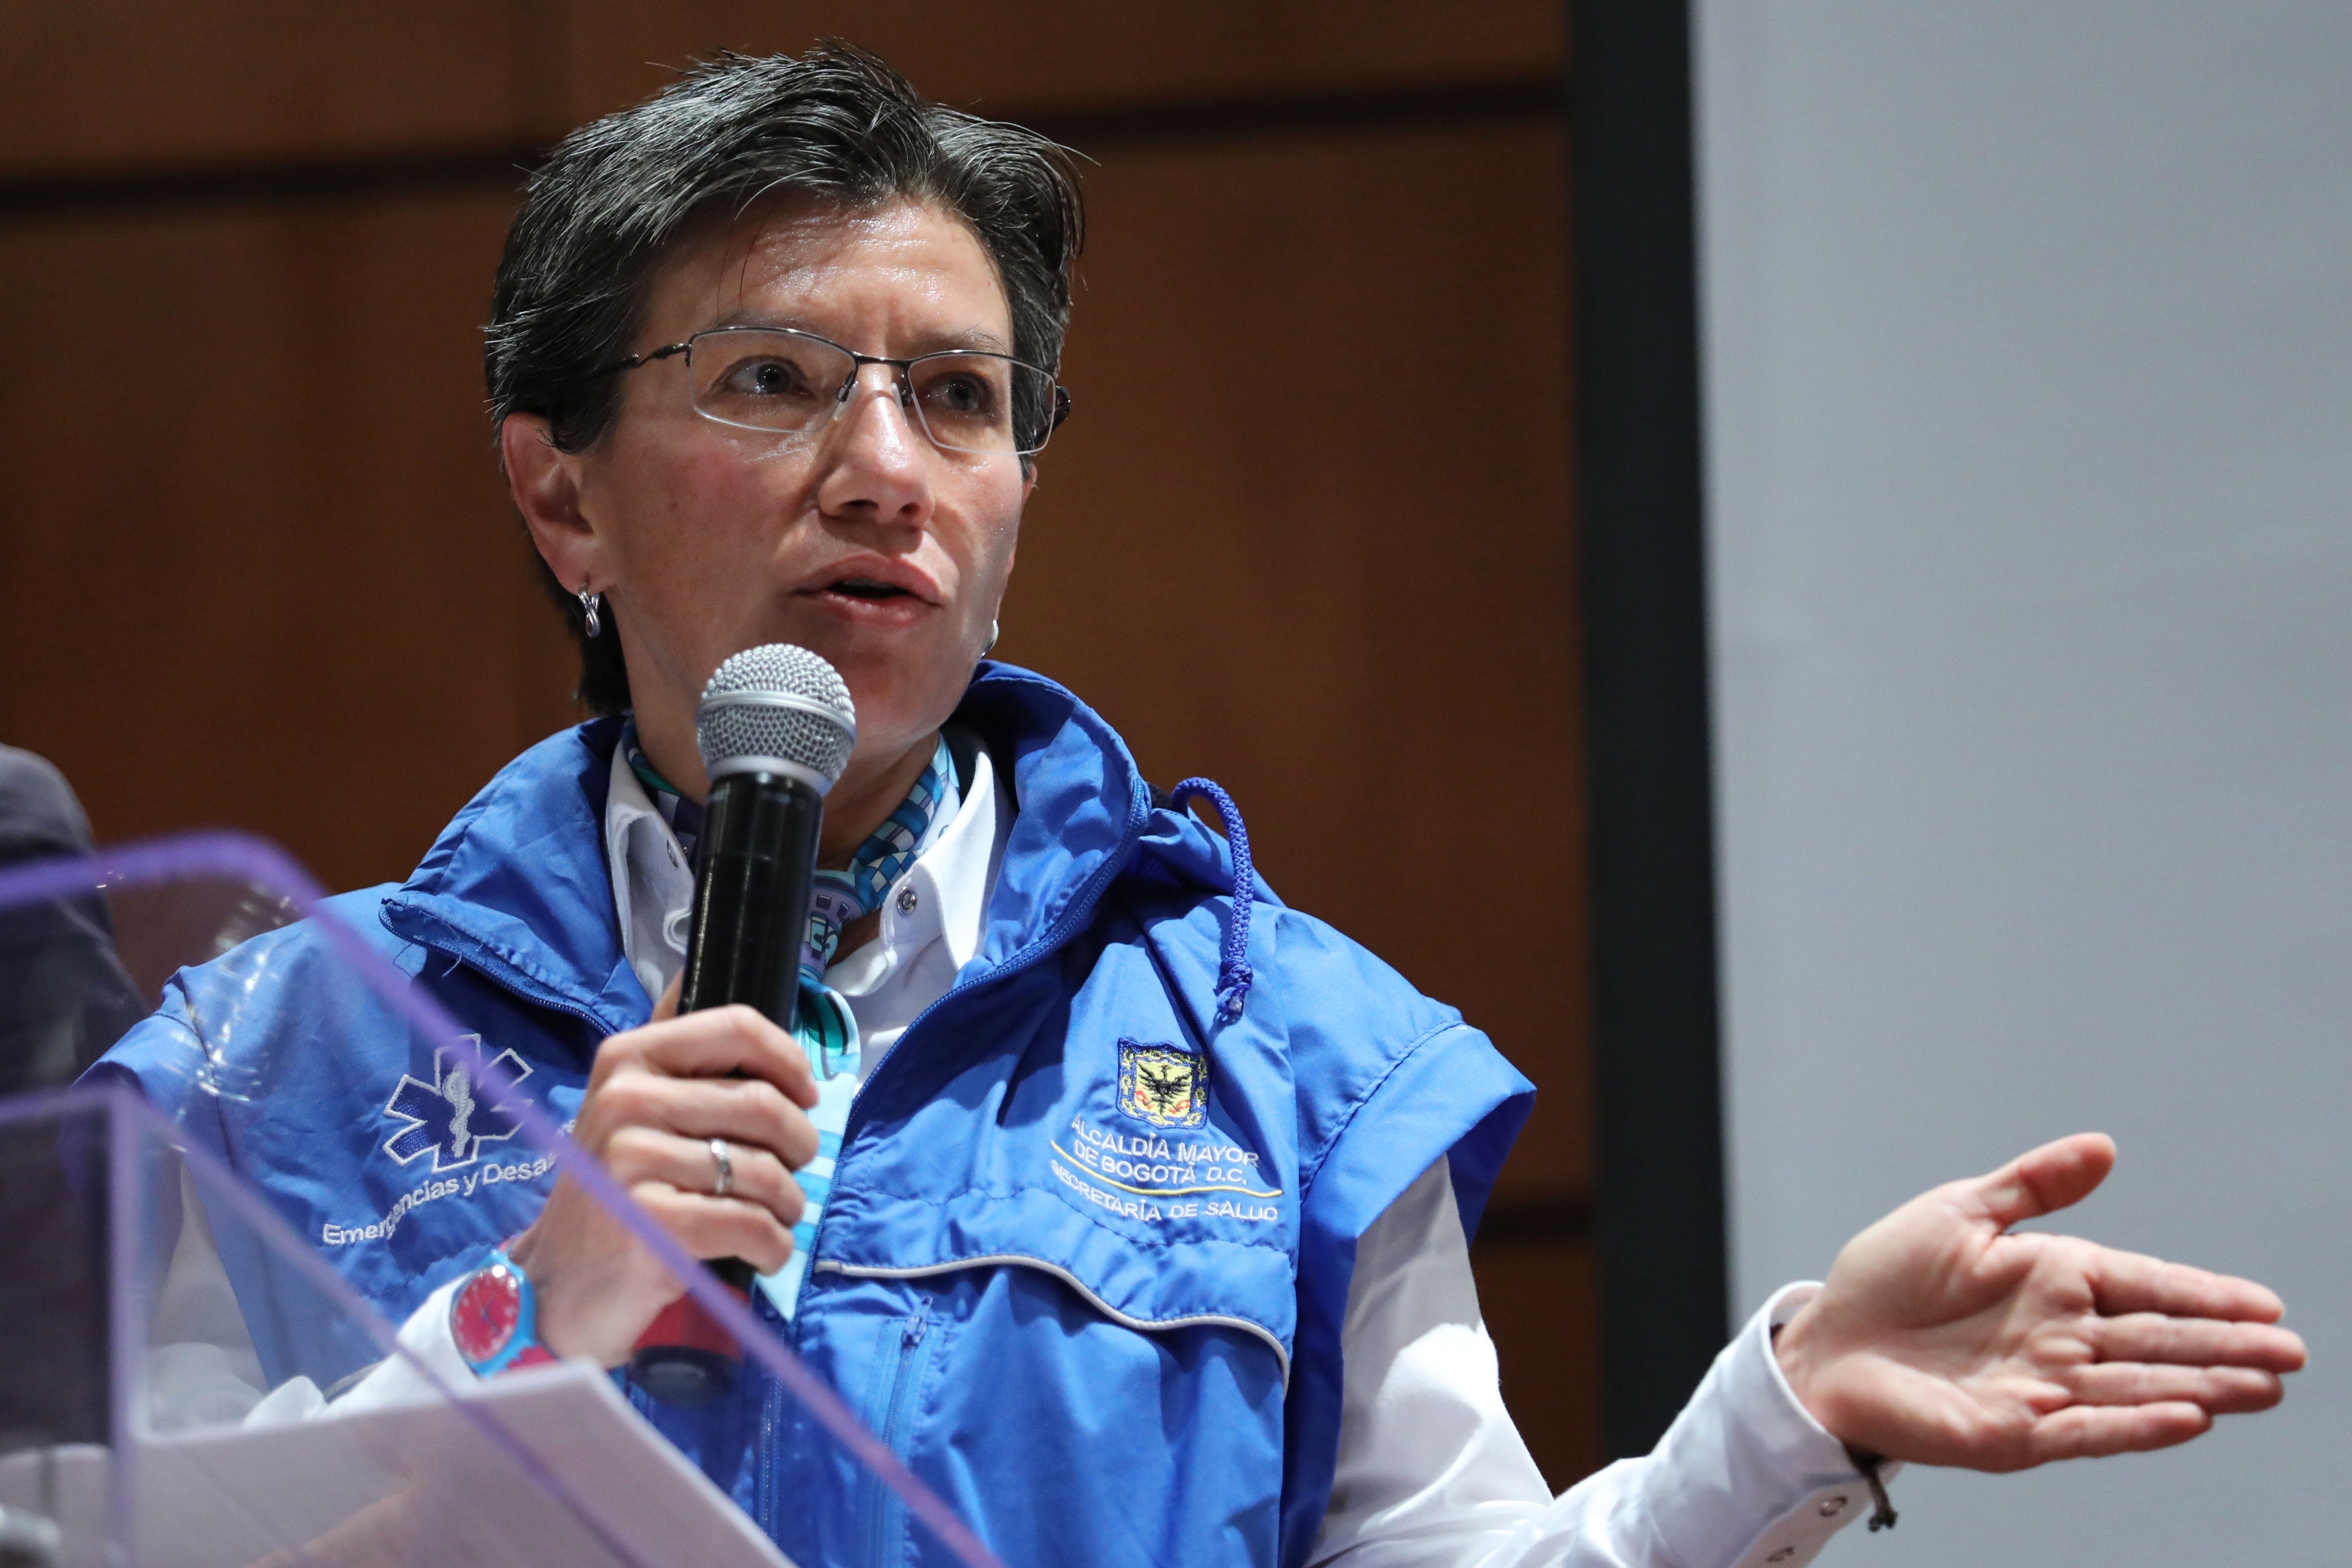 La alcaldesa de Bogotá, Claudia López, en una fotografía de archivo. EFE/ Carlos Ortega
